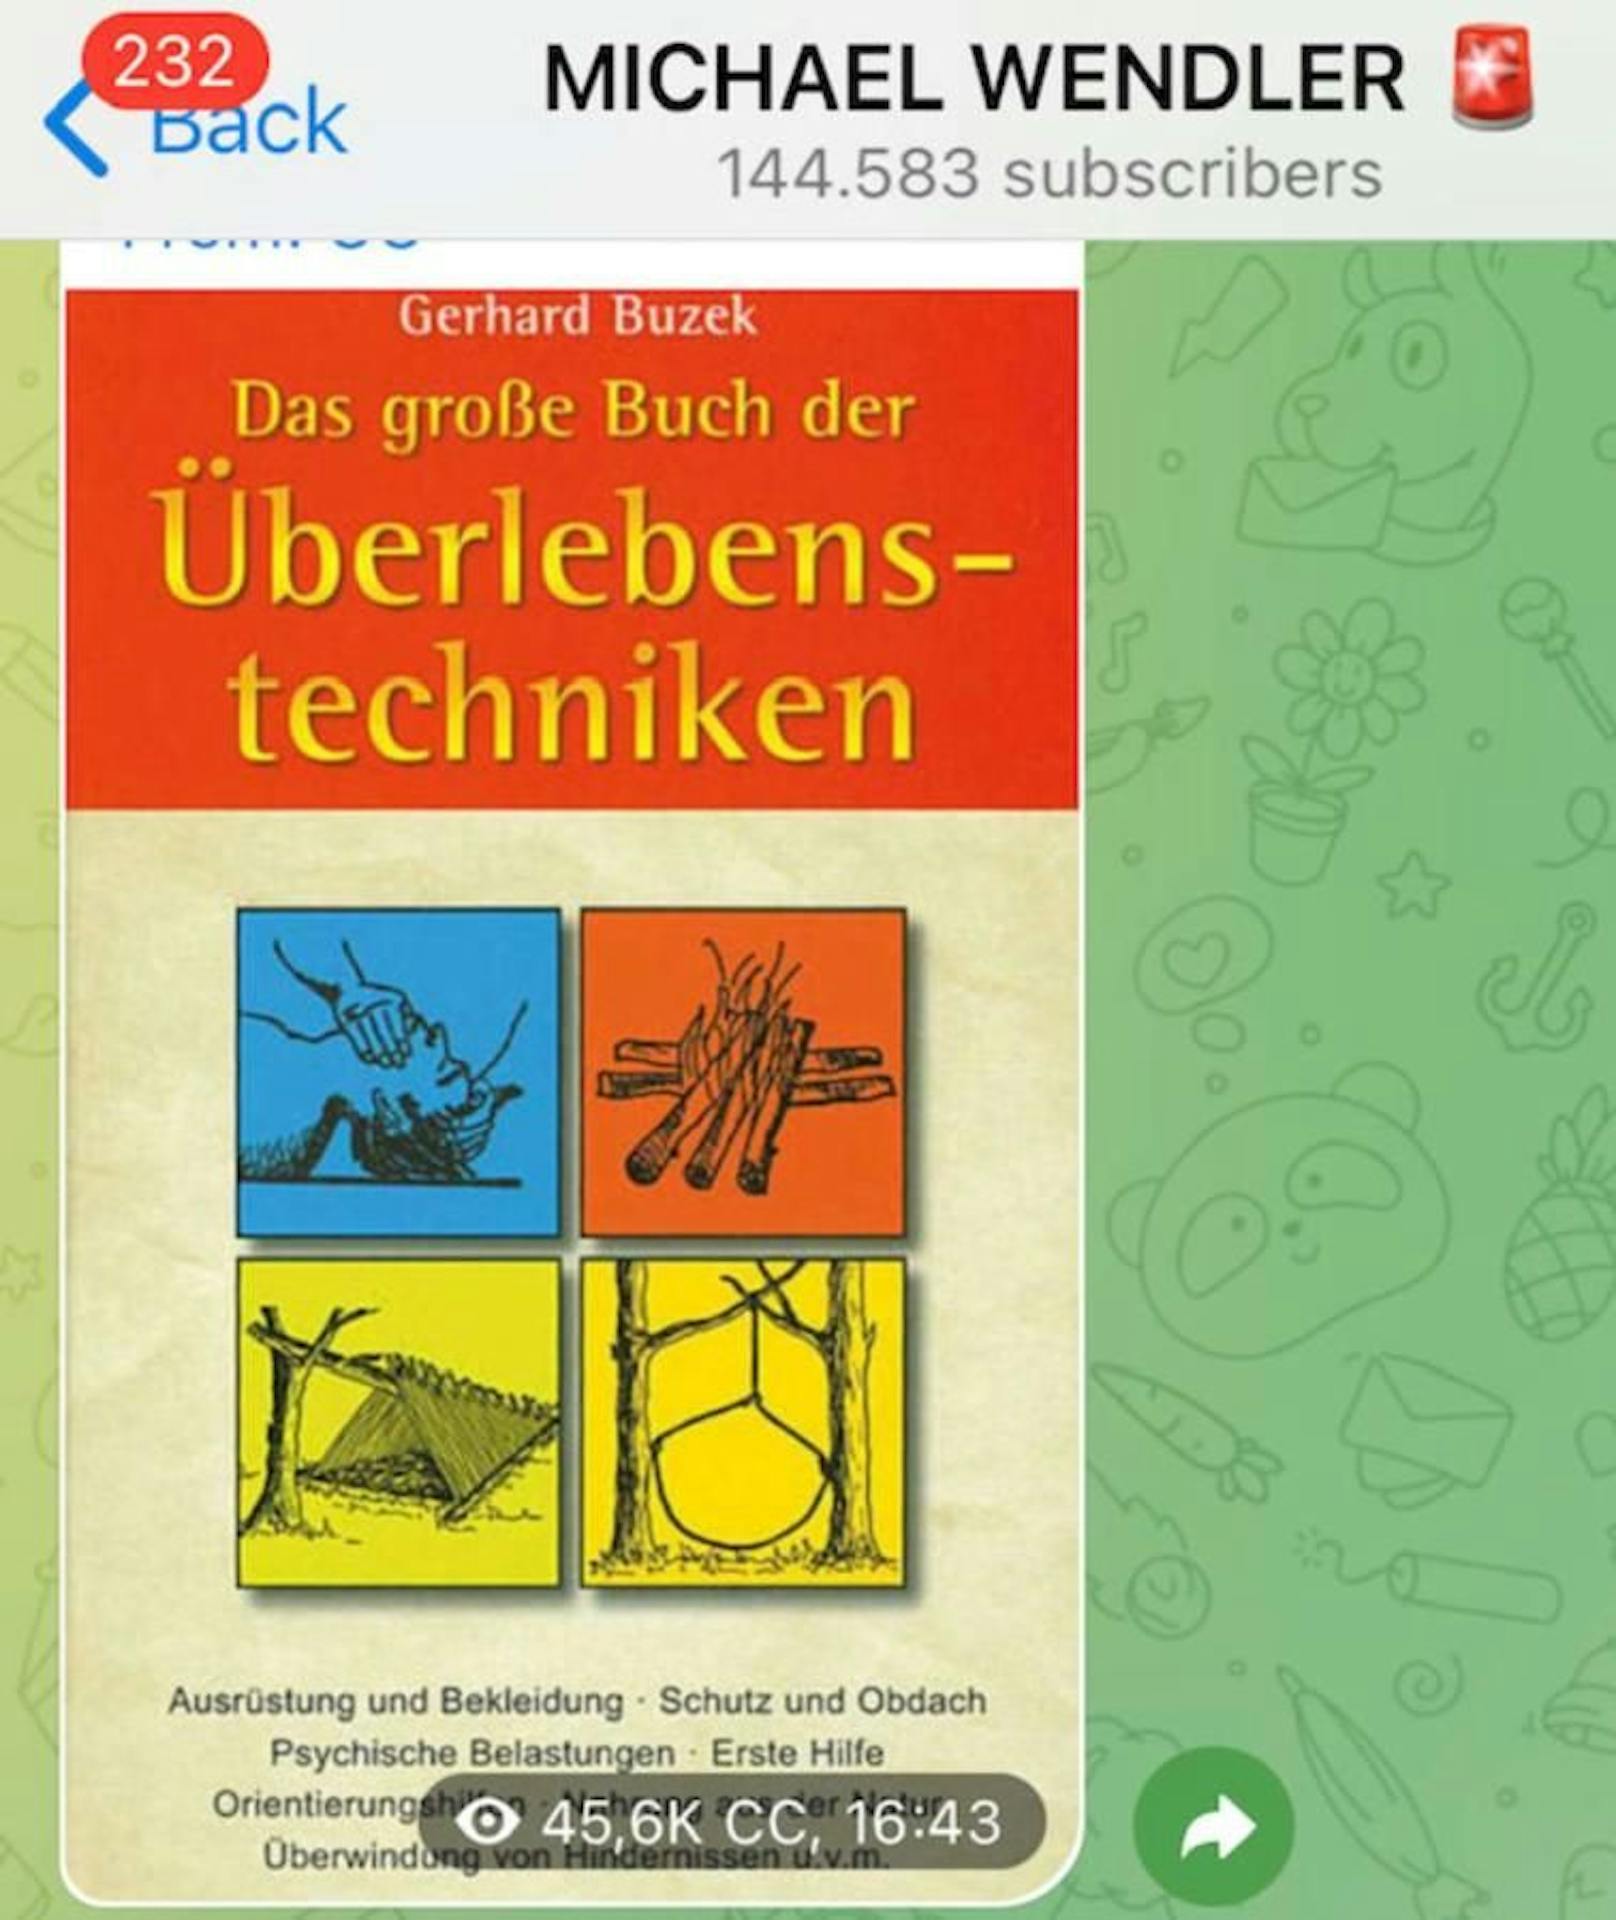 Auch das "Große Buch der Überlebenstechniken" ist im Angebot bei Michael Wendler. 